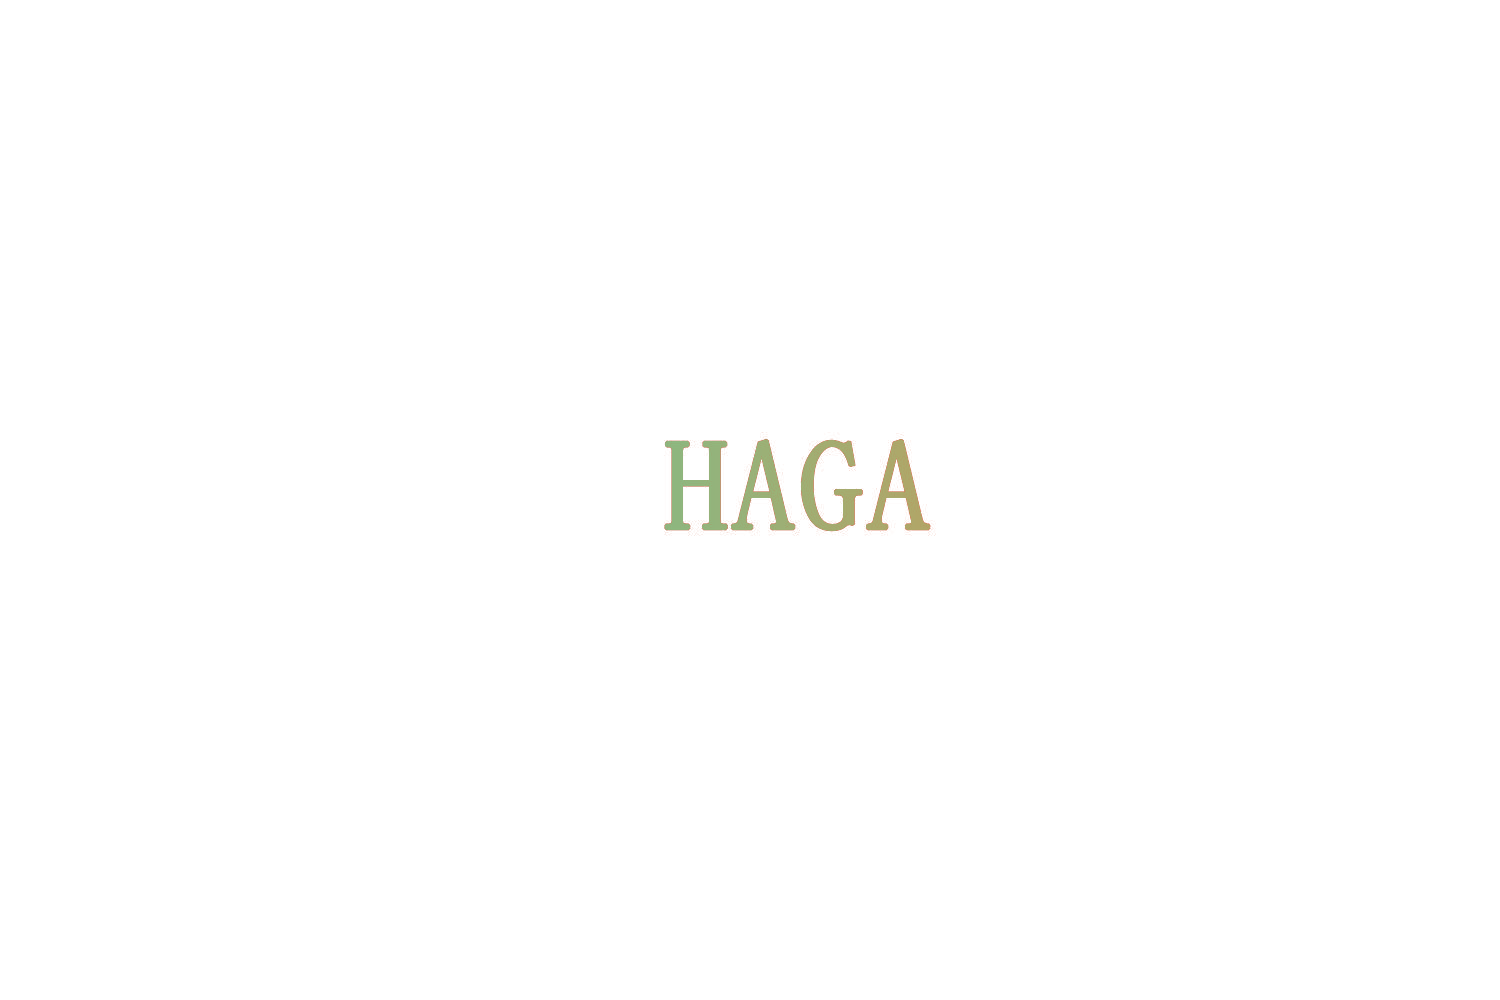 HAGA